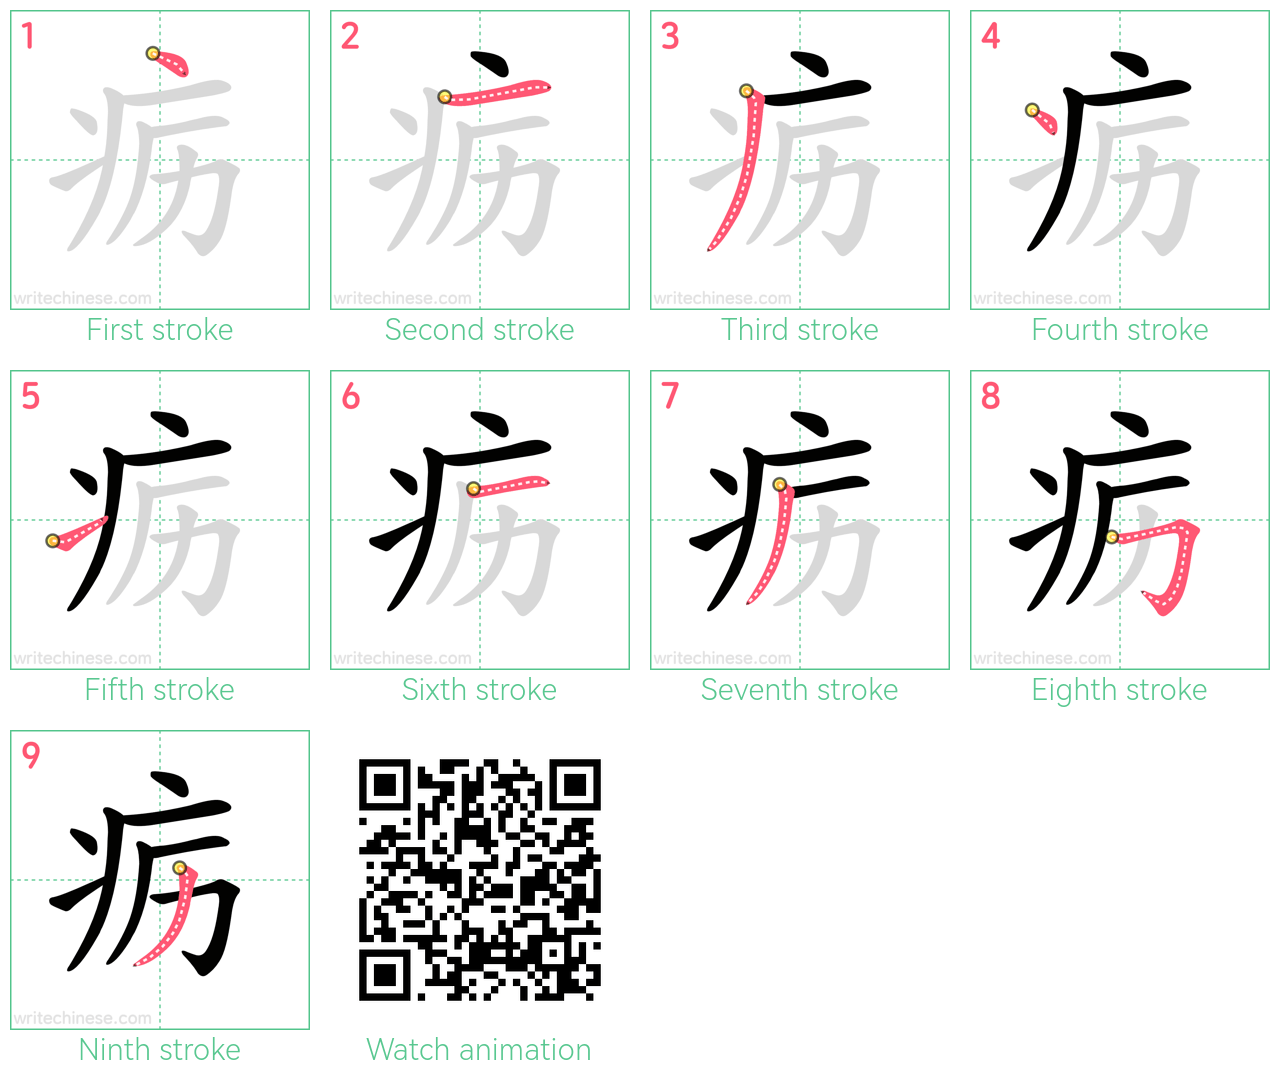 疬 step-by-step stroke order diagrams